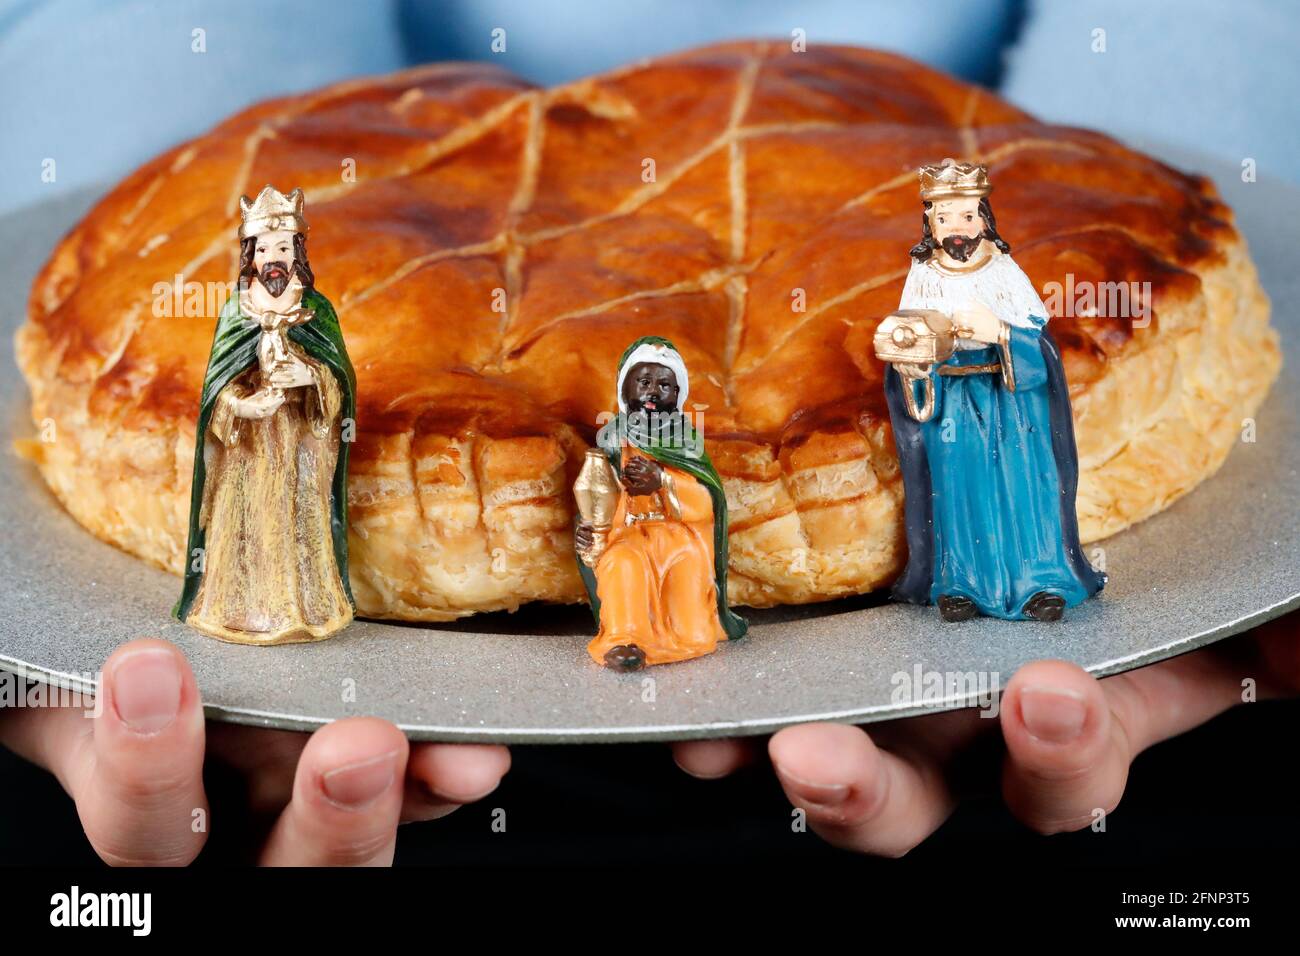 Königskuchen, Galette des rois. Drei Weise Männer Figuren. Ein beliebtes Lebensmittel, das ab Januar 6 erhältlich ist, oder Epiphany. Frankreich. Stockfoto